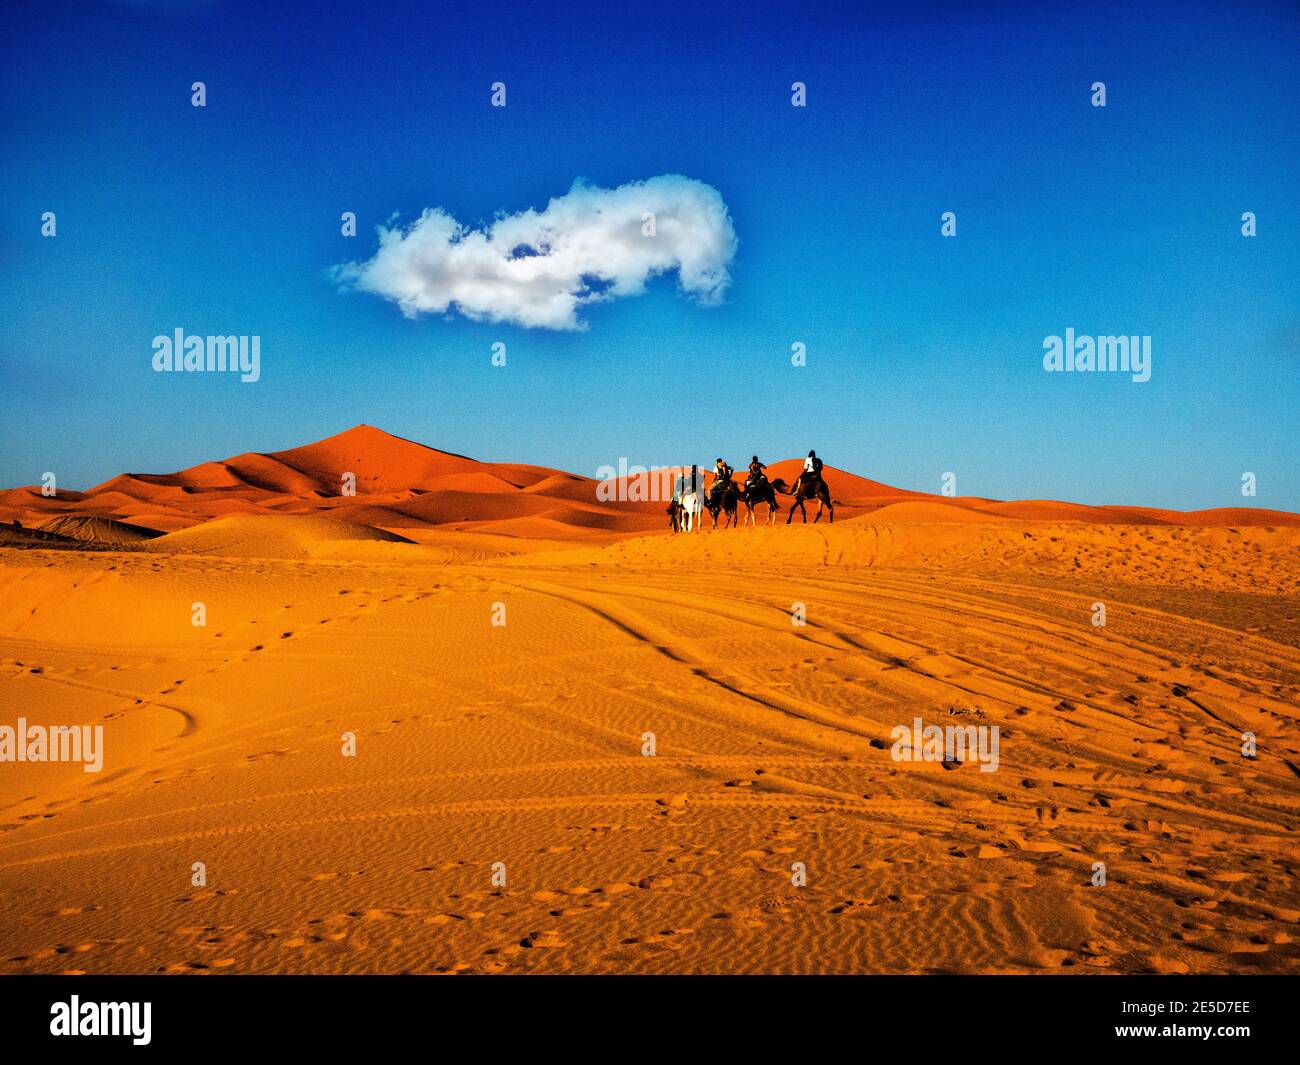 Rear view of a camel train through the Sahara Desert, Morocco Stock Photo